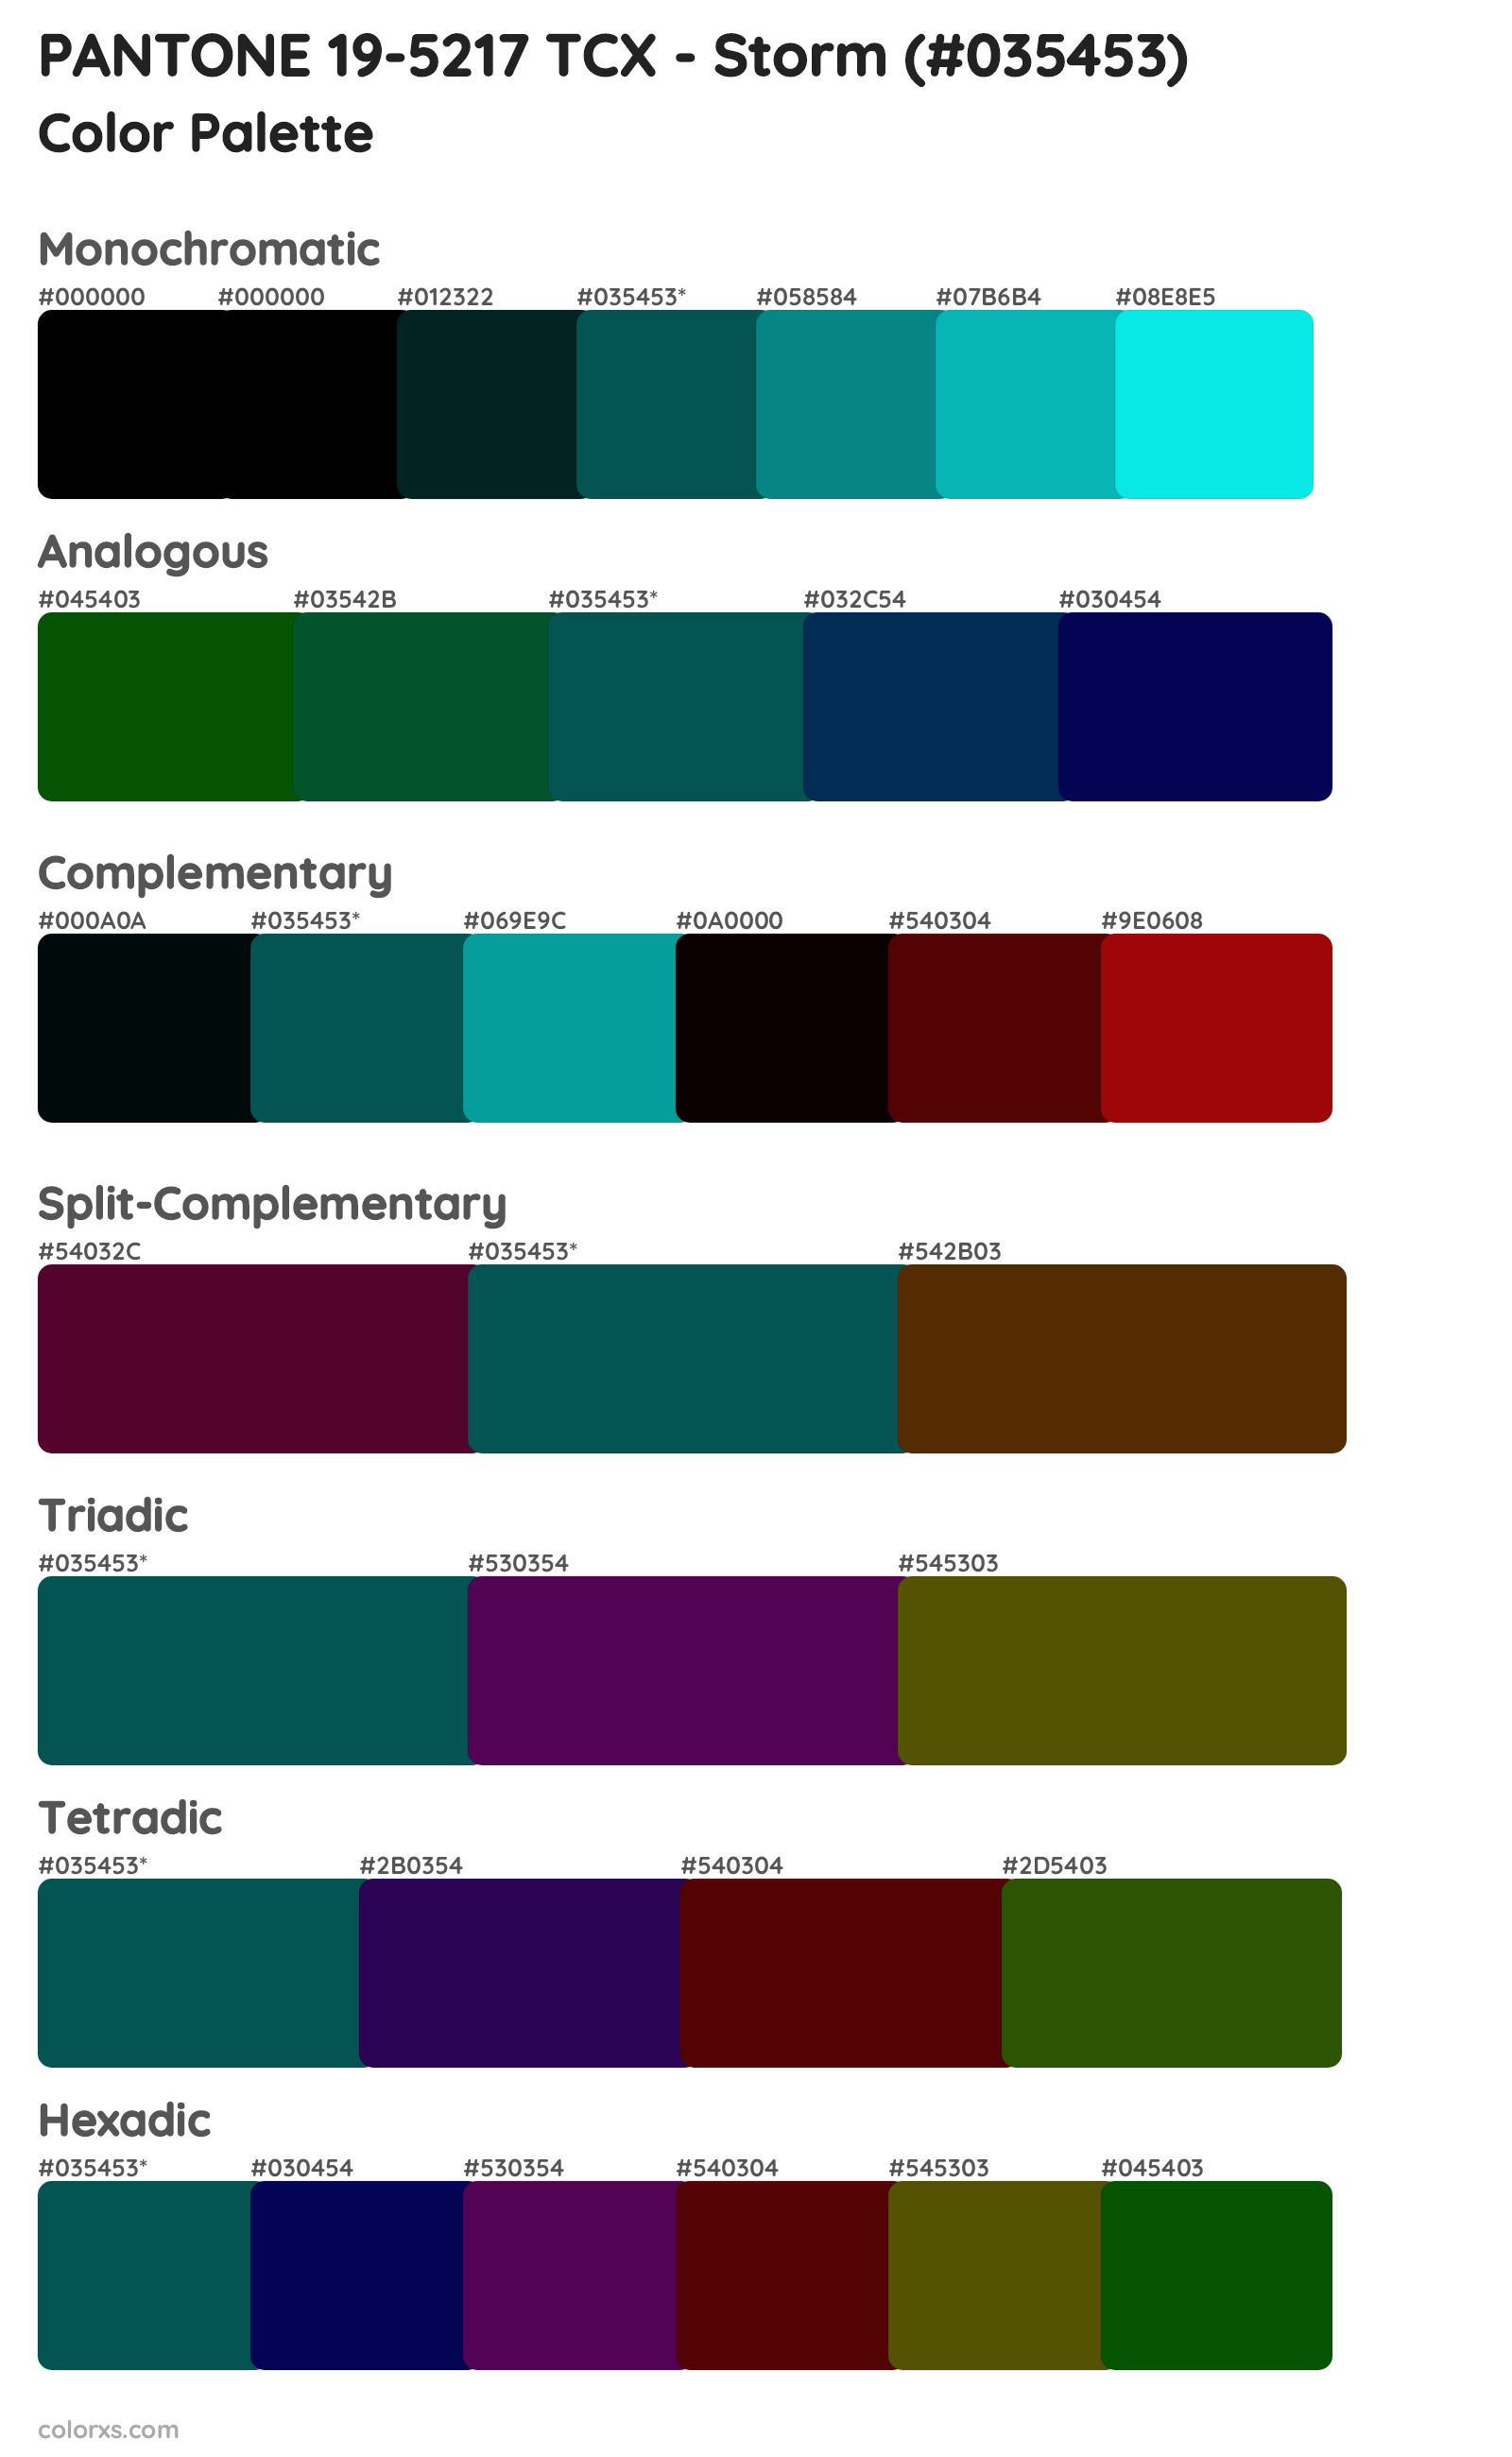 PANTONE 19-5217 TCX - Storm Color Scheme Palettes